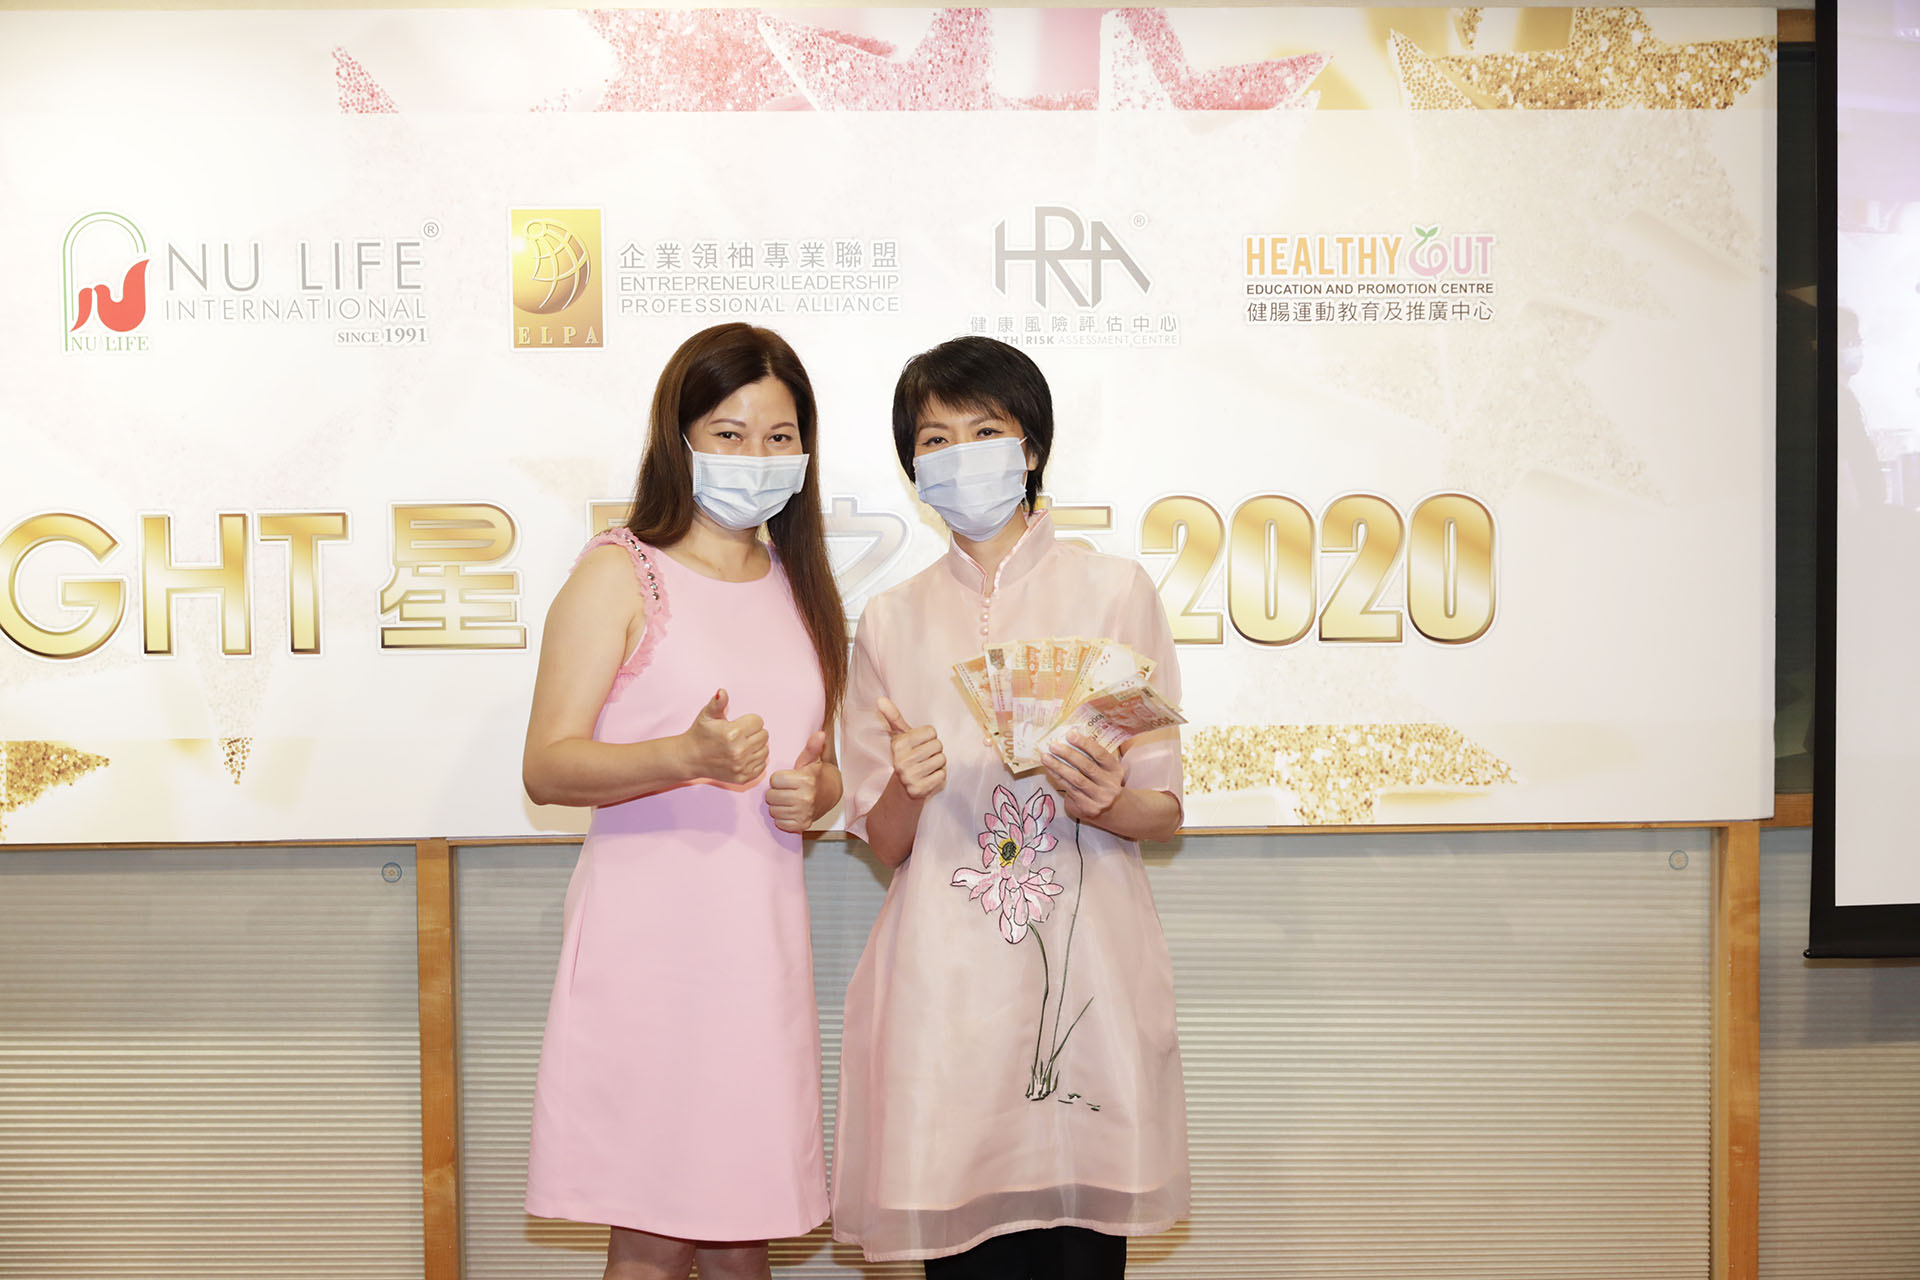 恭賀陳笑微女士從星級百萬富翁遊戲贏取HK$10000獎金並與公司合共損助HK$6000予「心晴行動慈善基金」